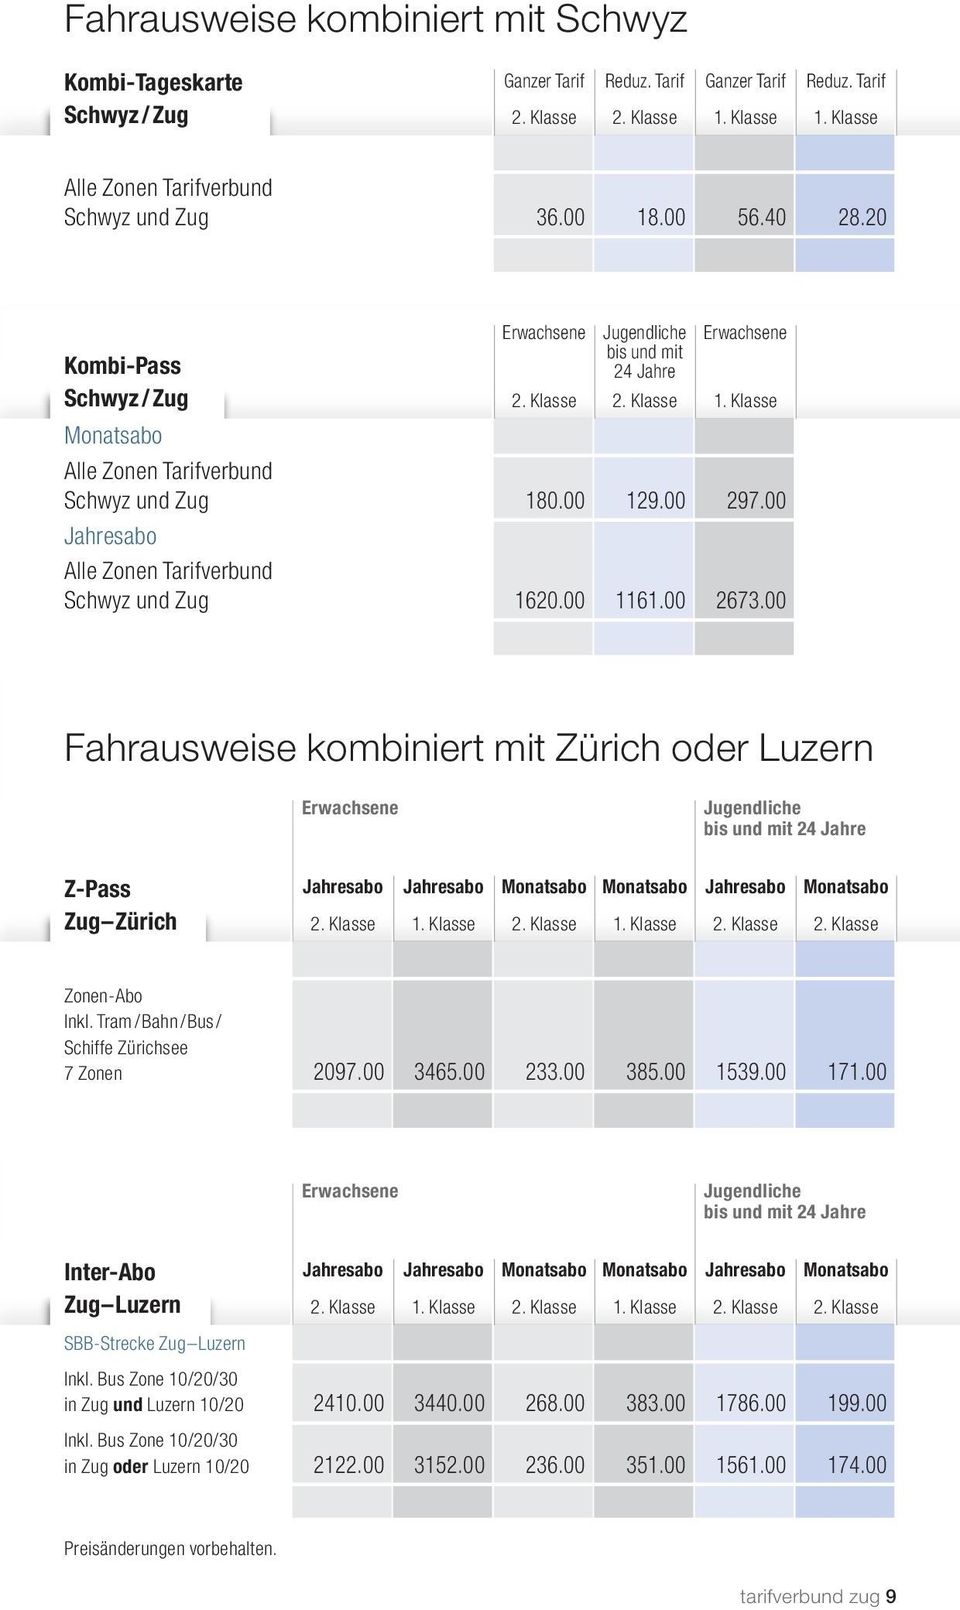 00 Jahresabo Alle Zonen Tarifverbund Schwyz und Zug 1620.00 1161.00 2673.